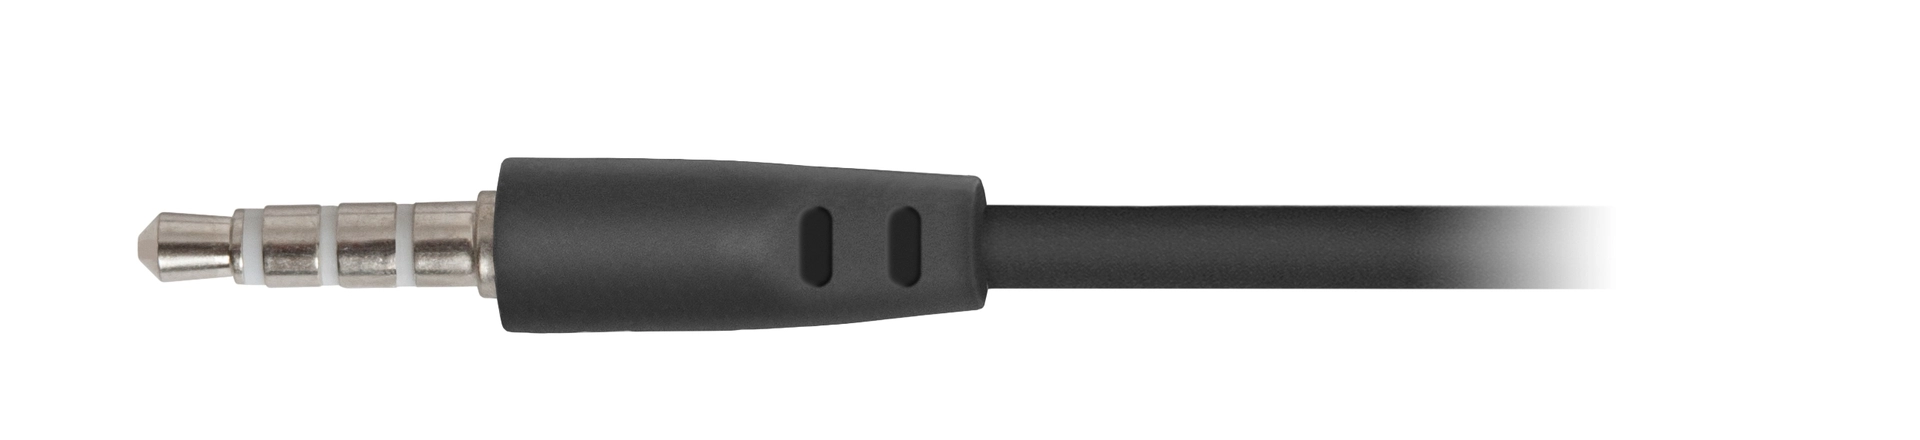 Наушники проводные DEFENDER Pulse 420 black/yellow (63421)